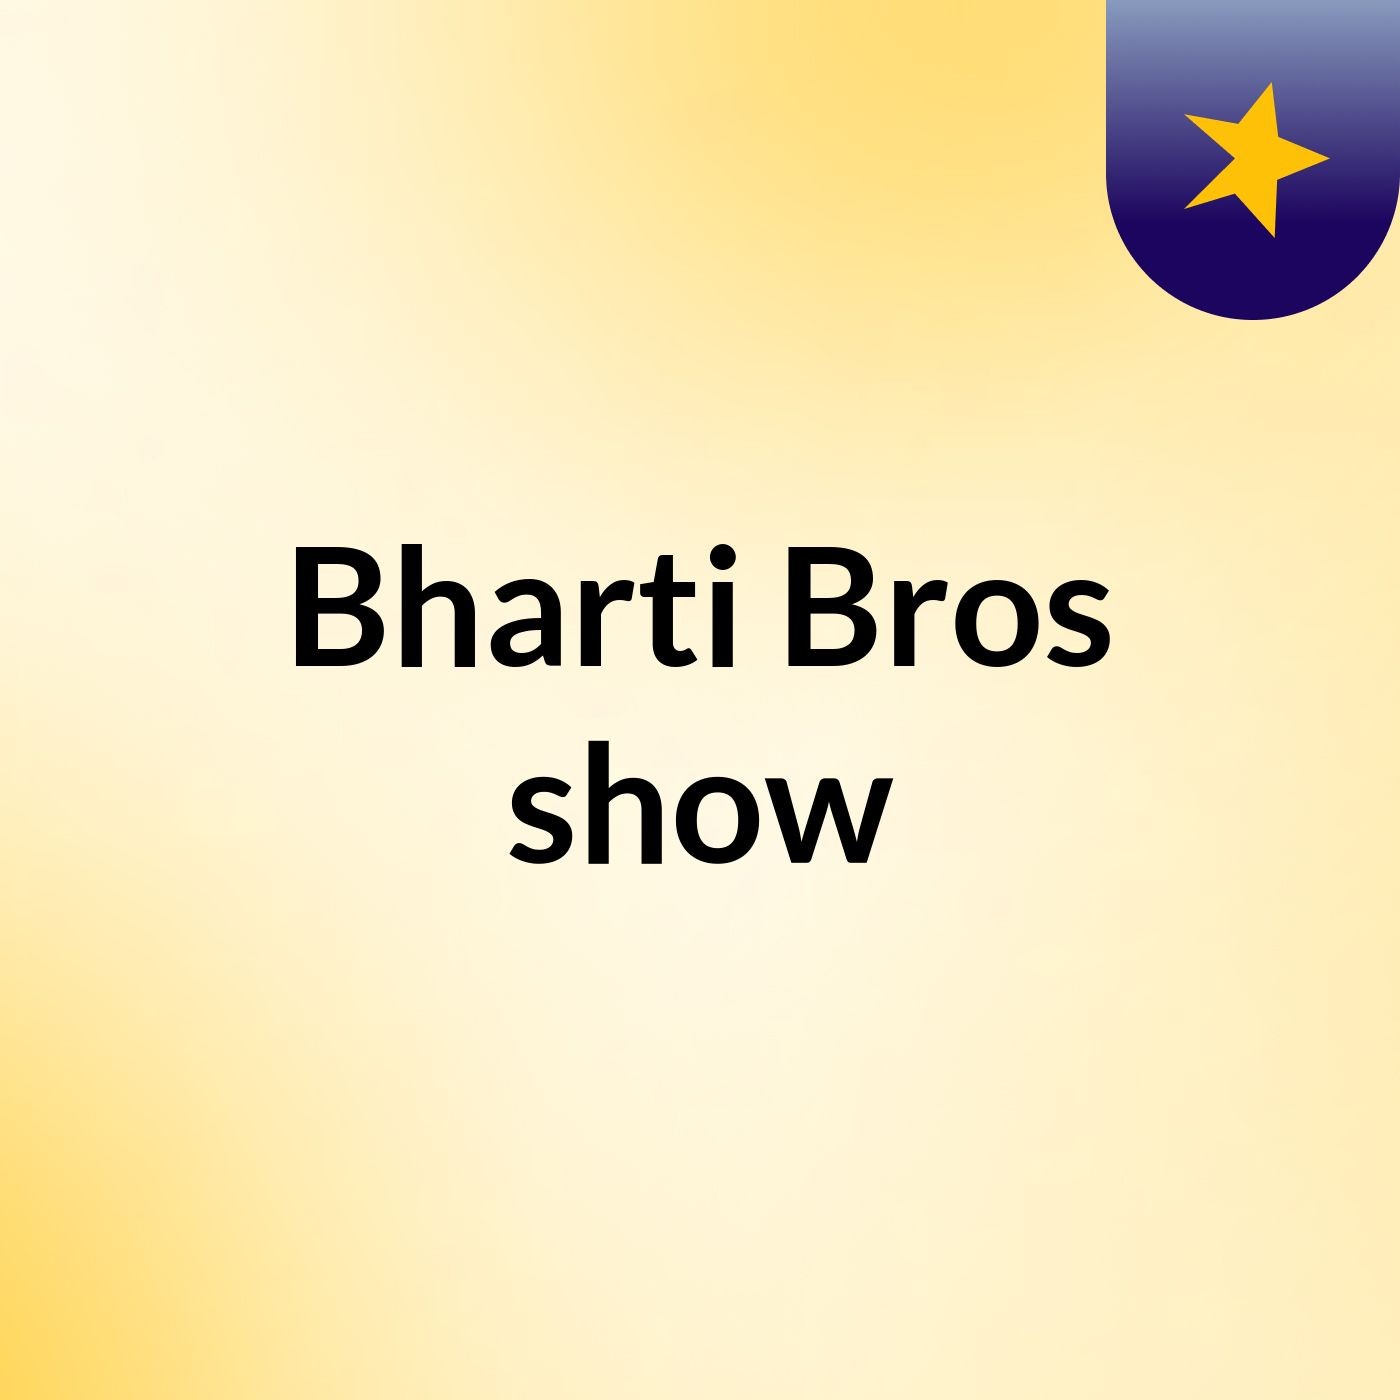 Bharti Bros show